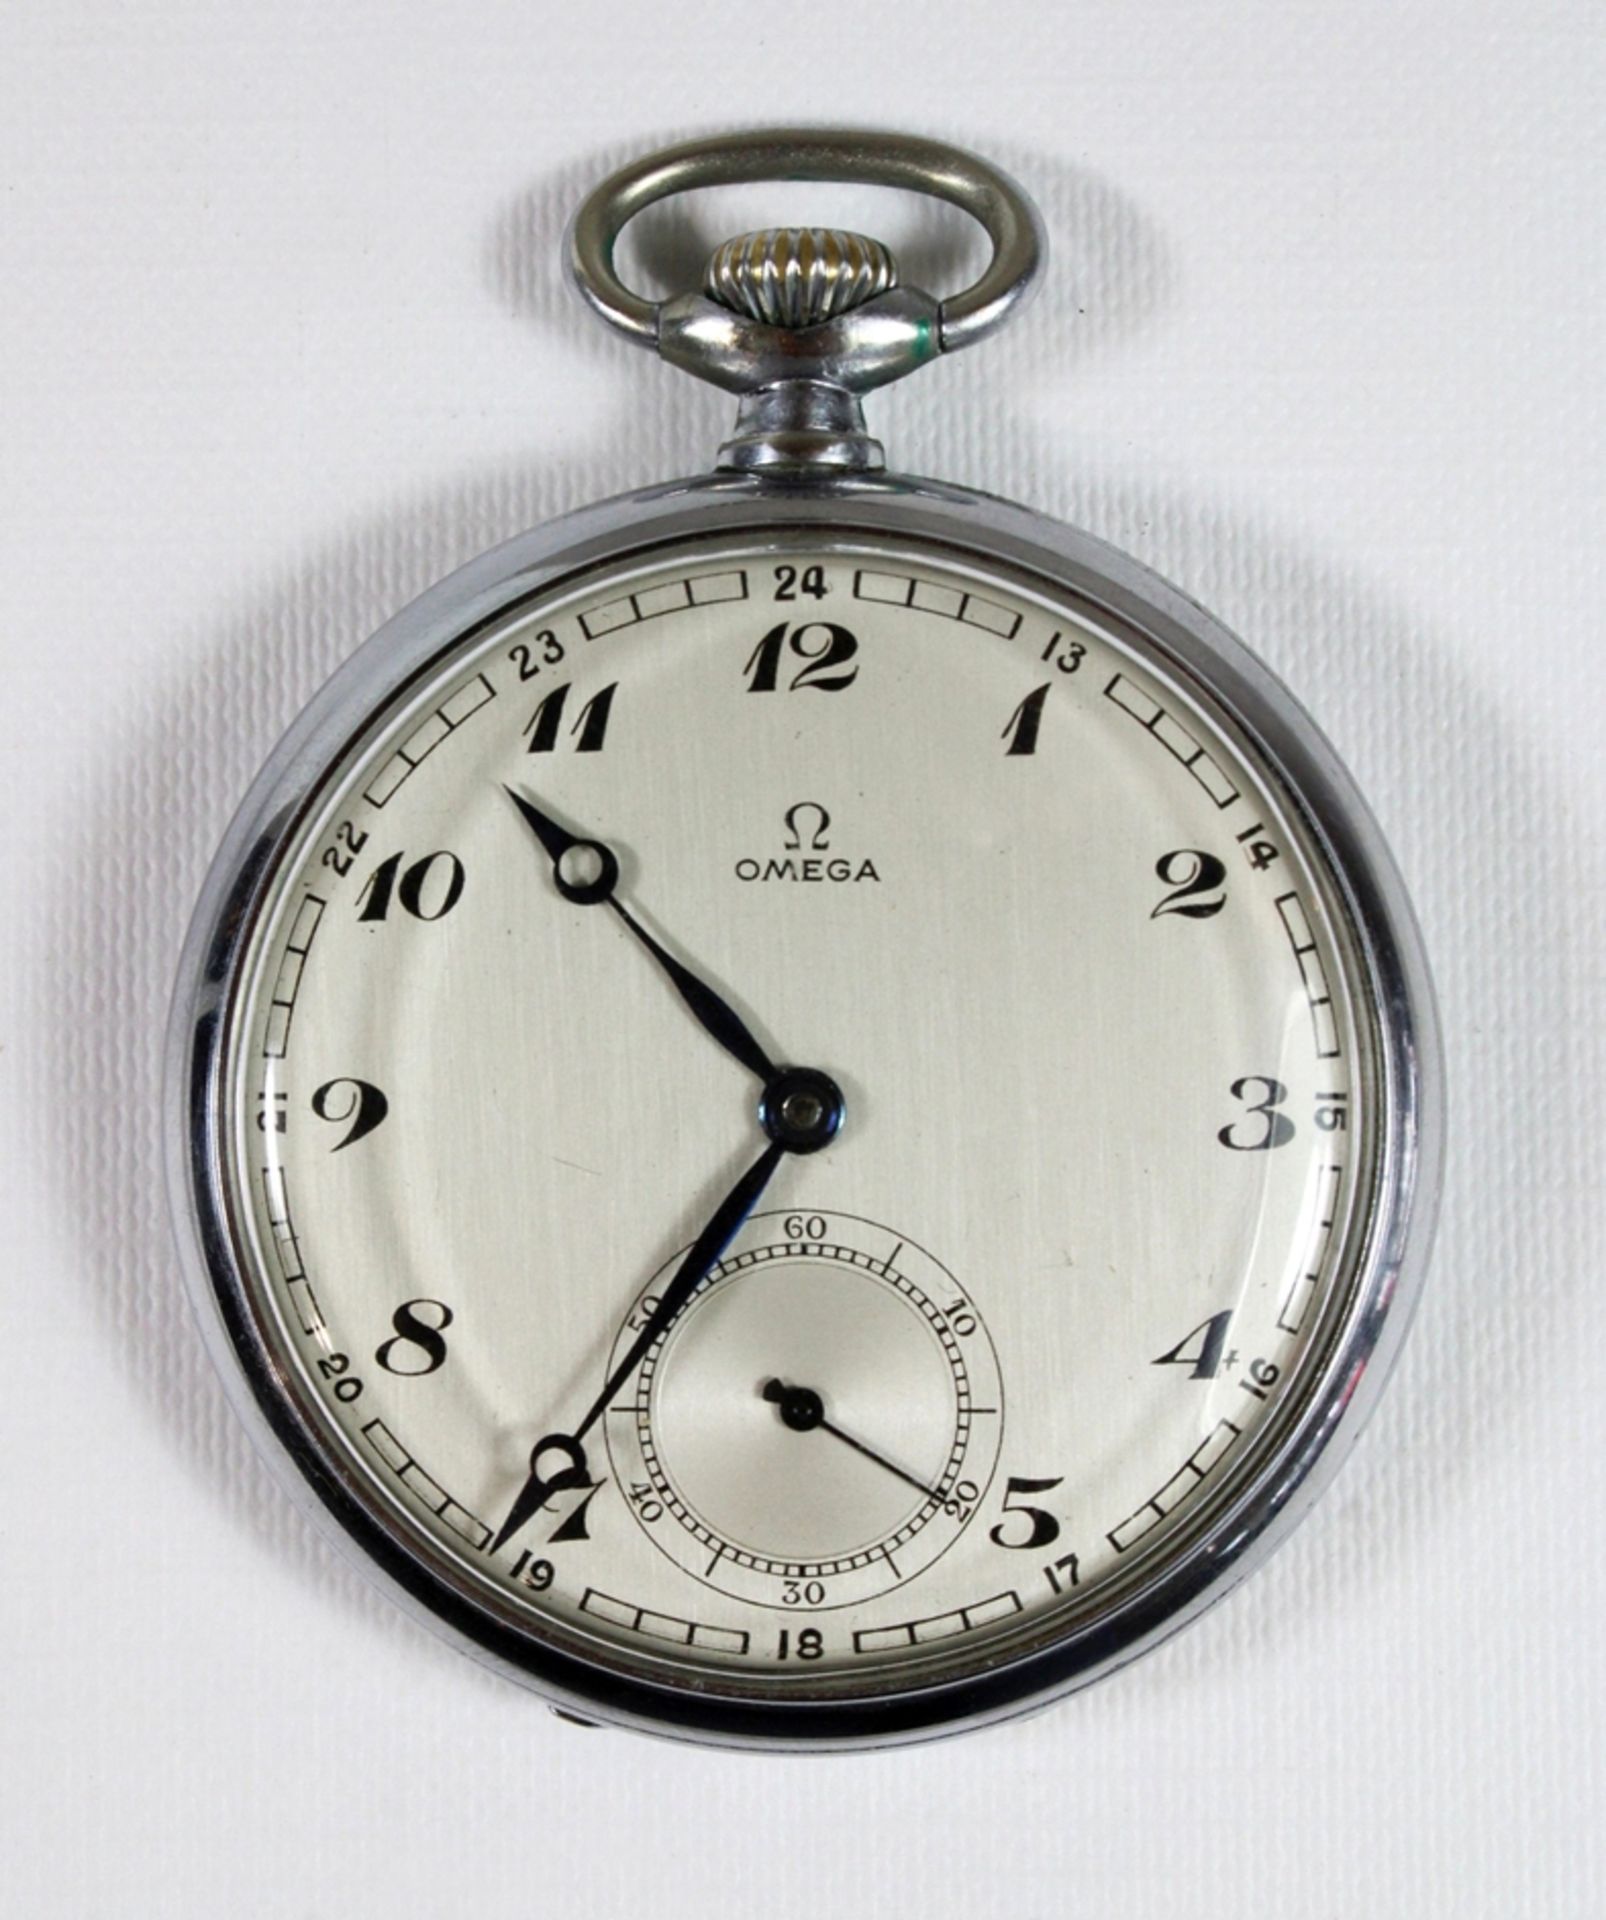 Omega Herrentaschenuhr, Modellnummer: 8996587. Guter Zustand, Uhr läuft, mit altem Garantieschein v